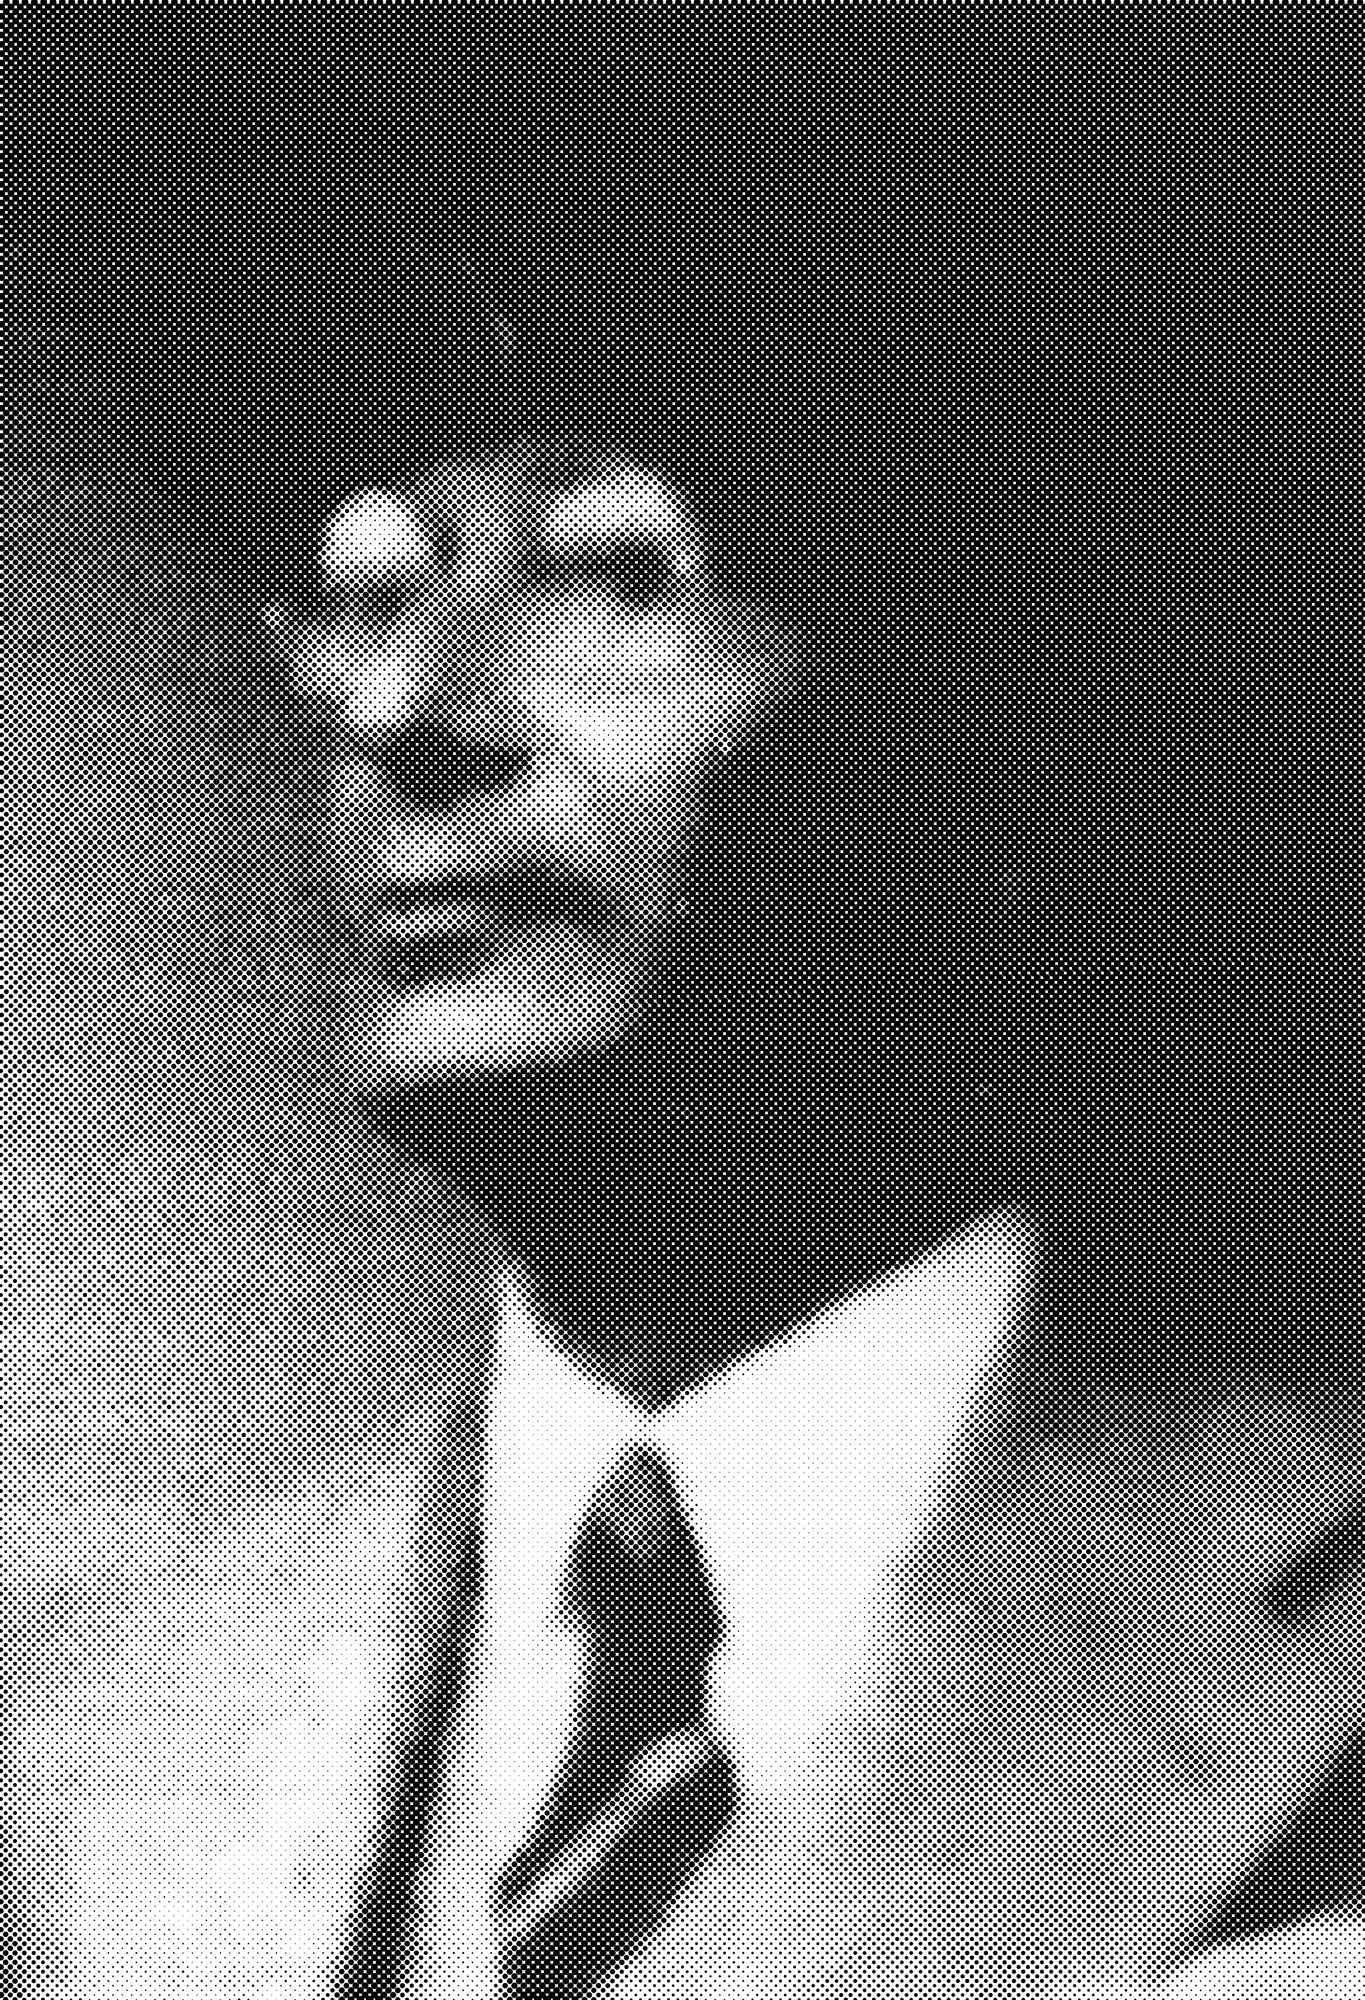 Dr. Alfred Wertheim